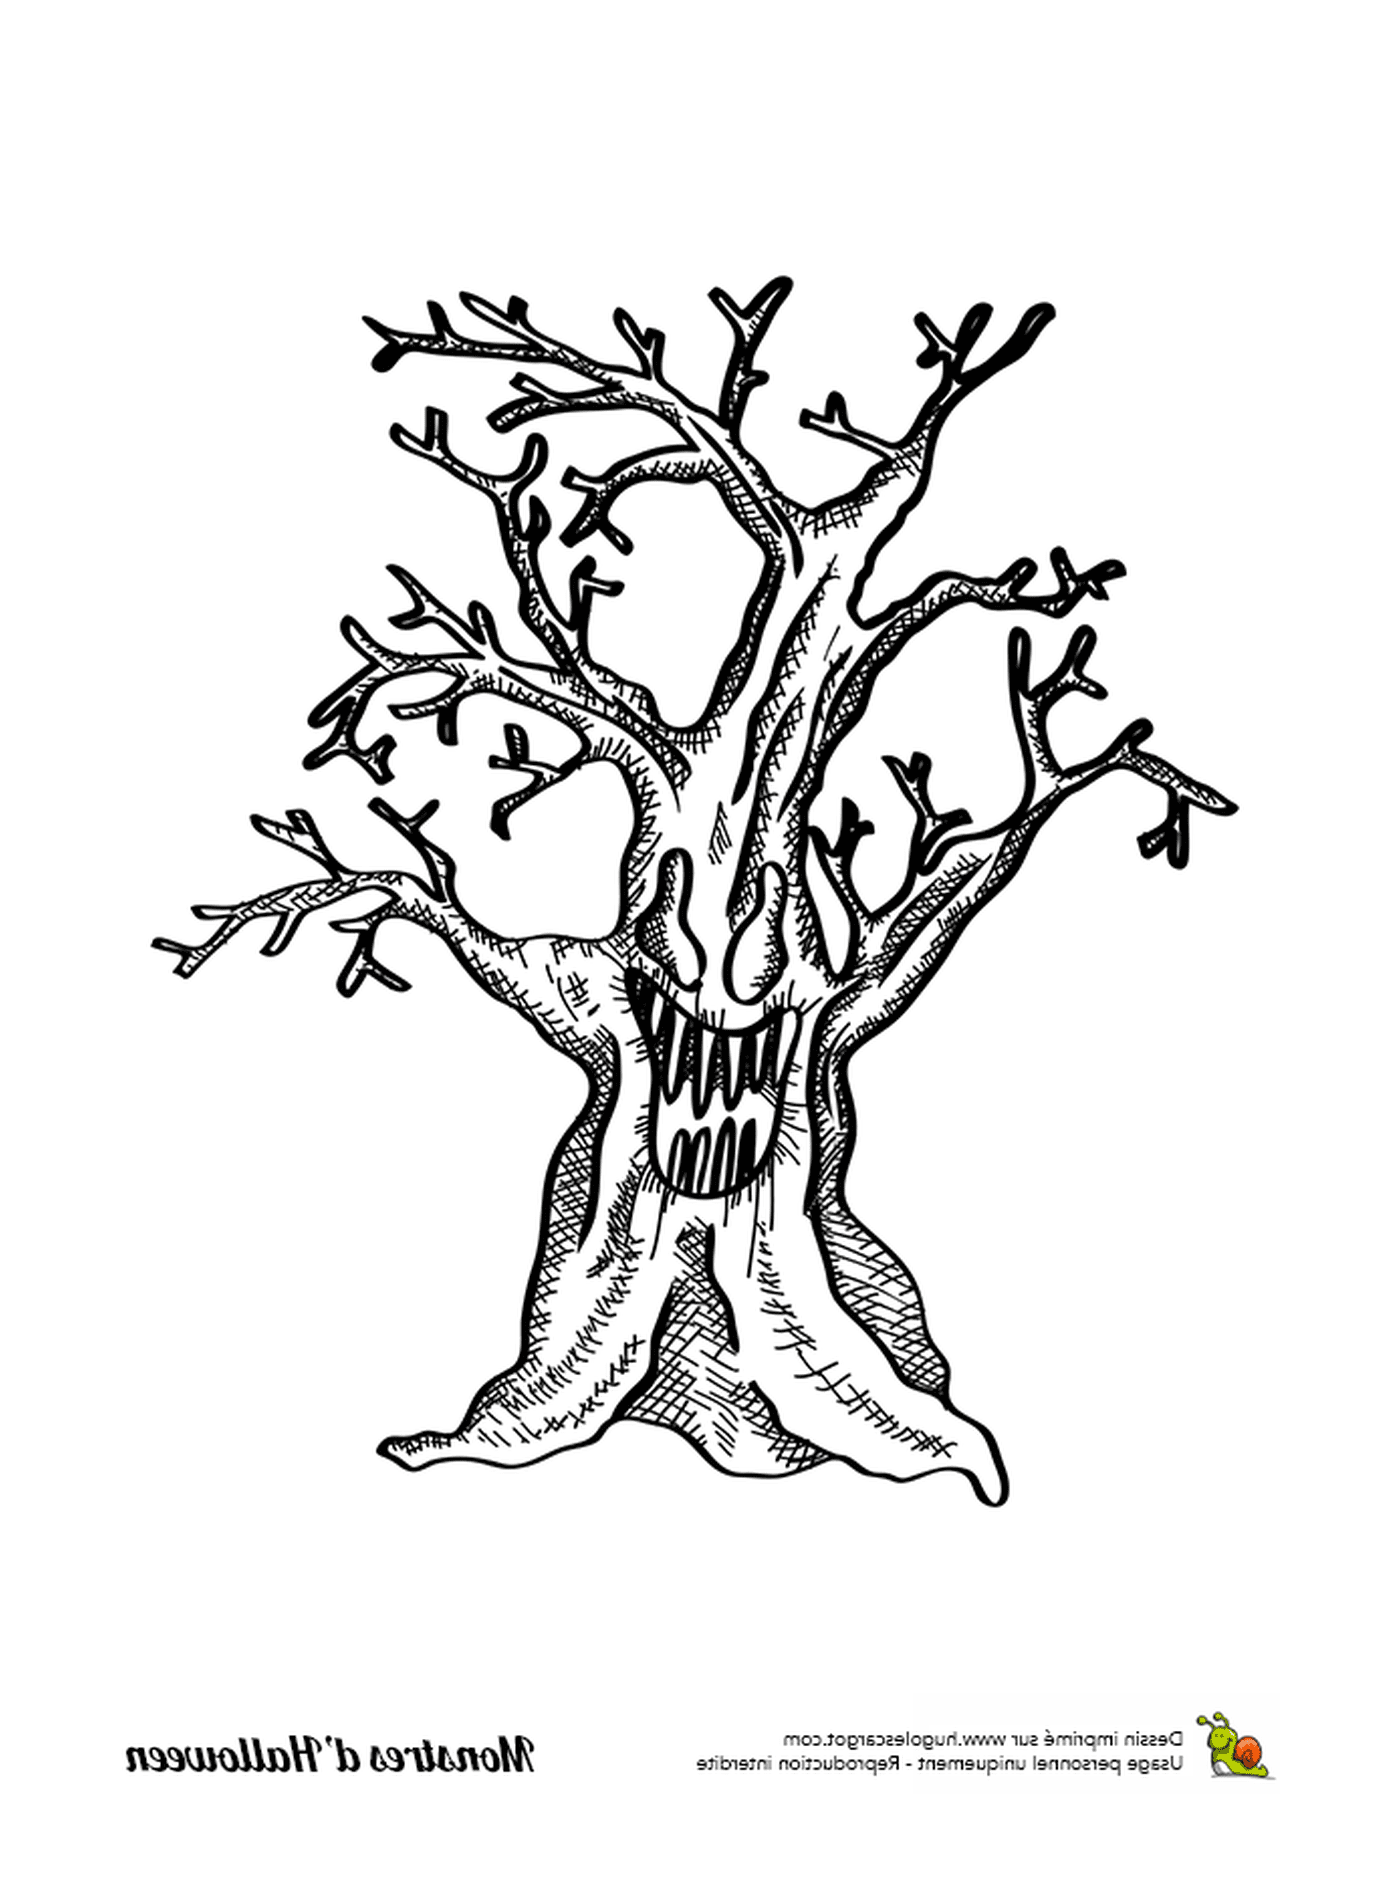  Una tinta, un viejo árbol sin hojas 